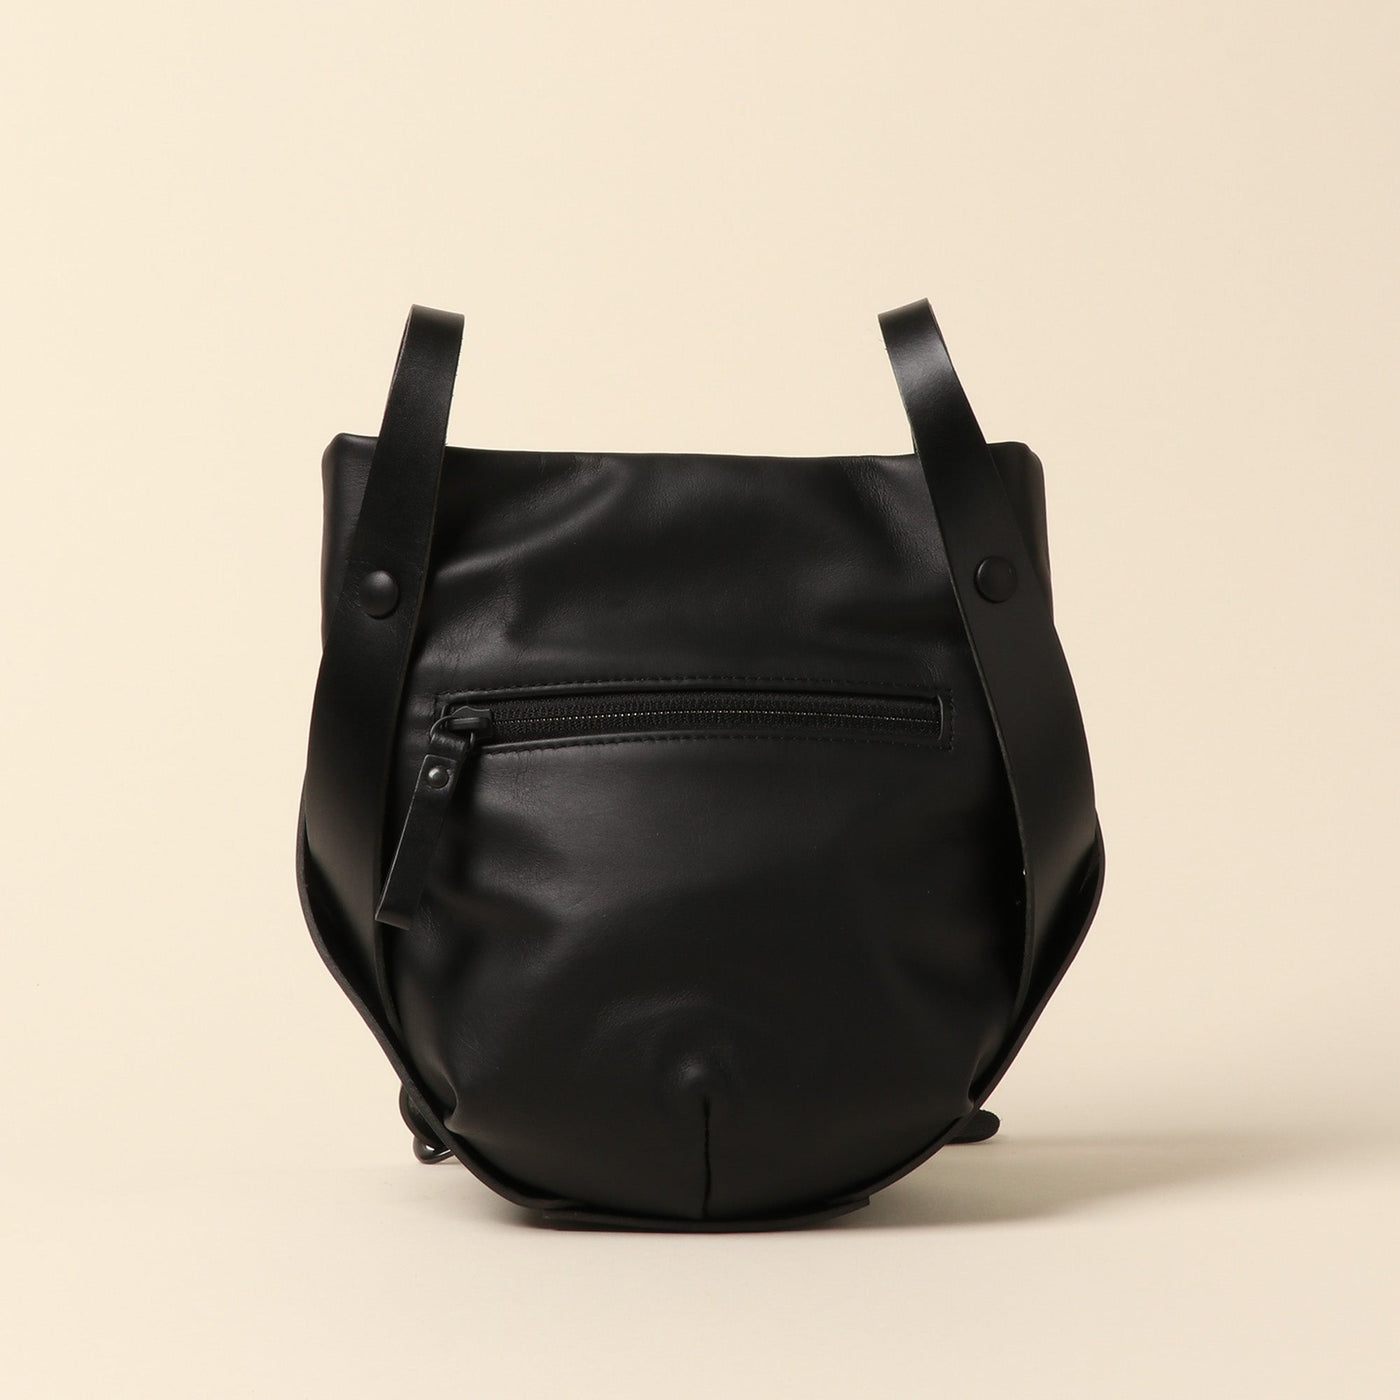 <Estine> Cradle series leather shoulder bag, black